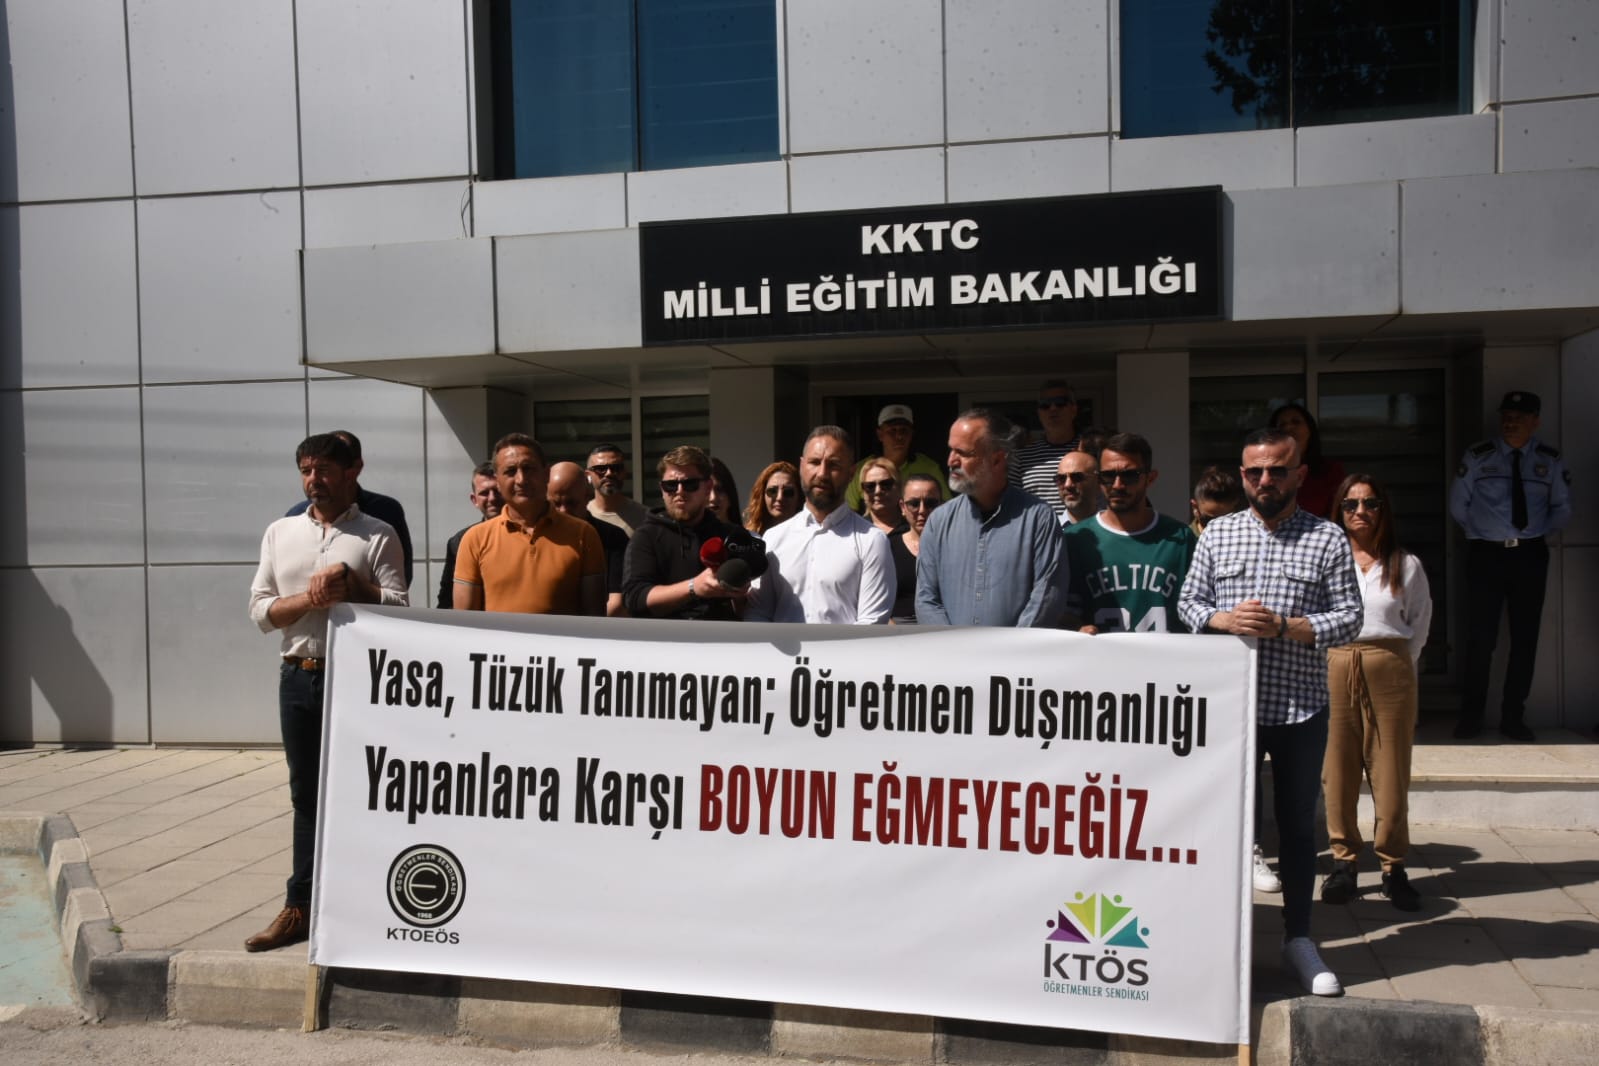 KTÖS ve KTOEÖS Milli Eğitim Bakanlığı önünde eylem yaptı – BRTK